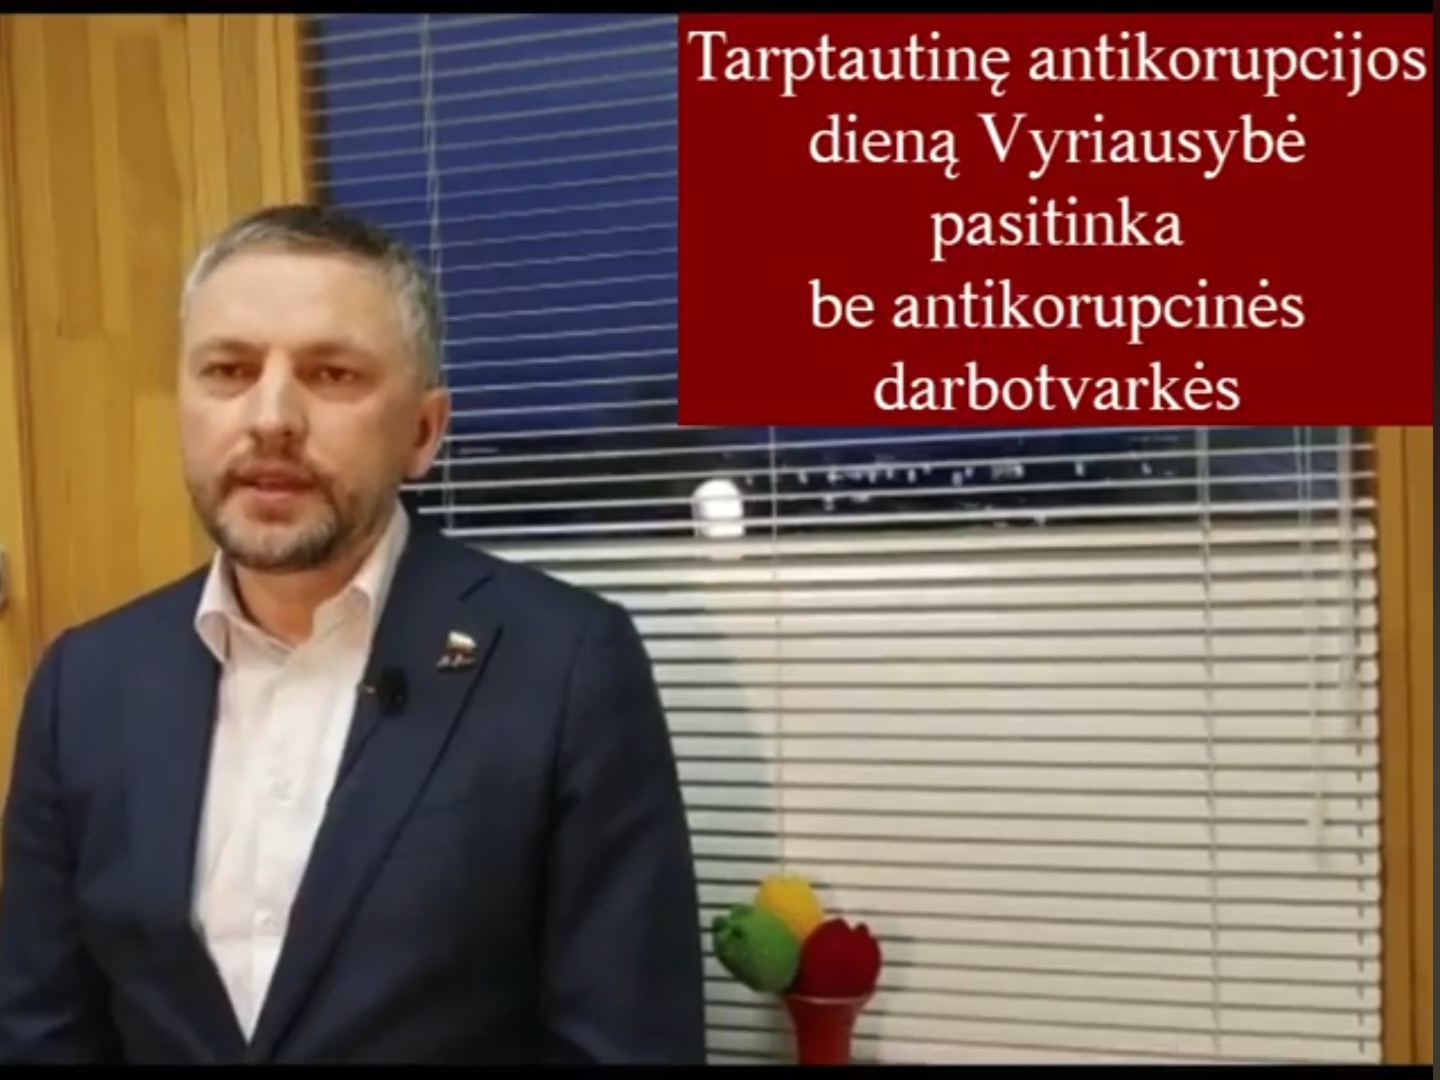 Antikorupcijos diena be antikorupcinės darbotvarkės (video)